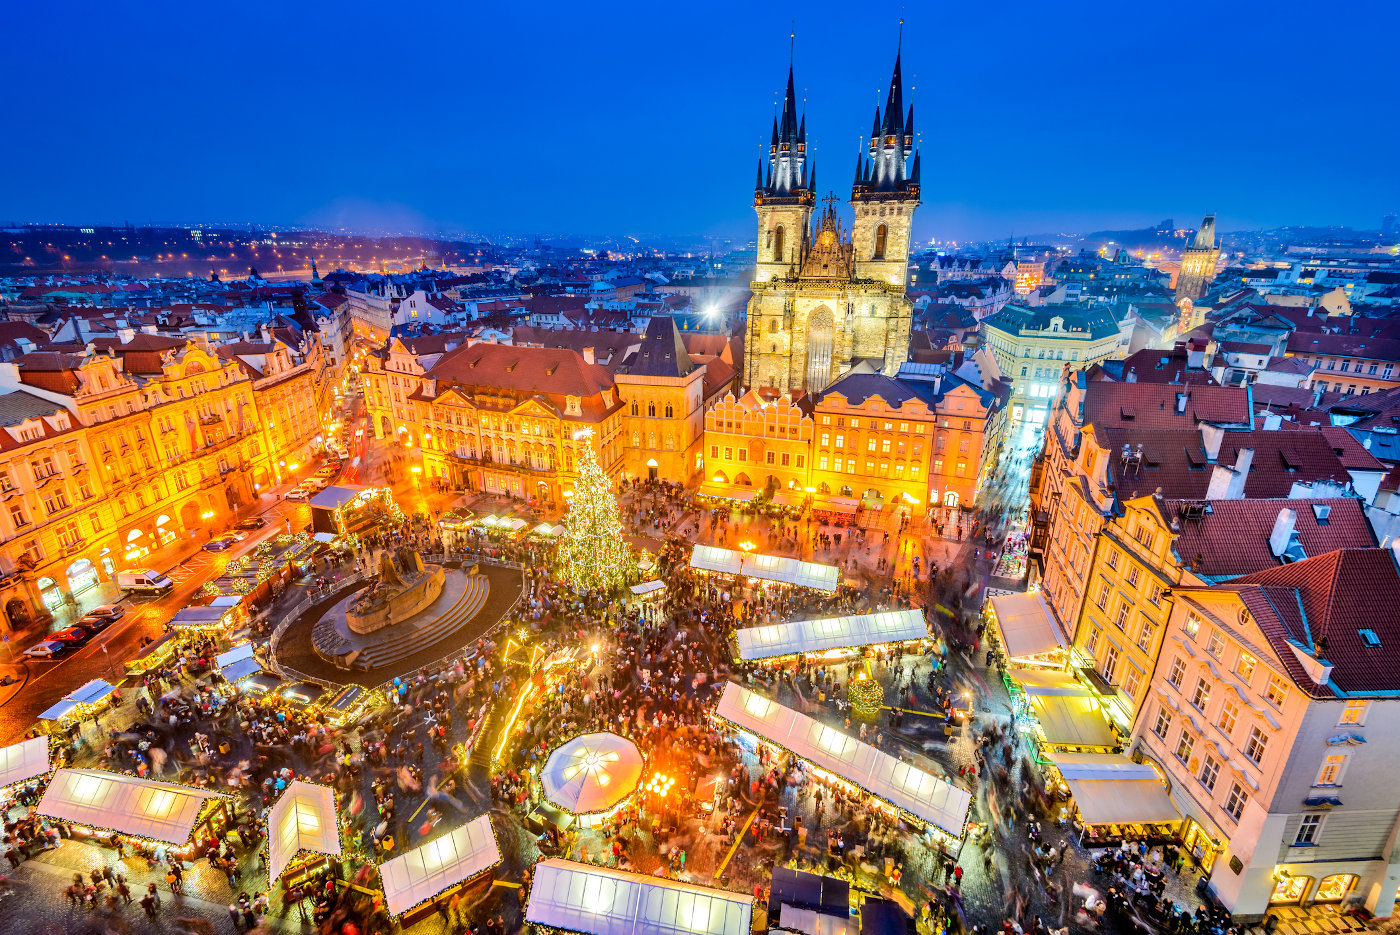 Blick auf den Weihnachtsmarkt in der Altstadt von Prag